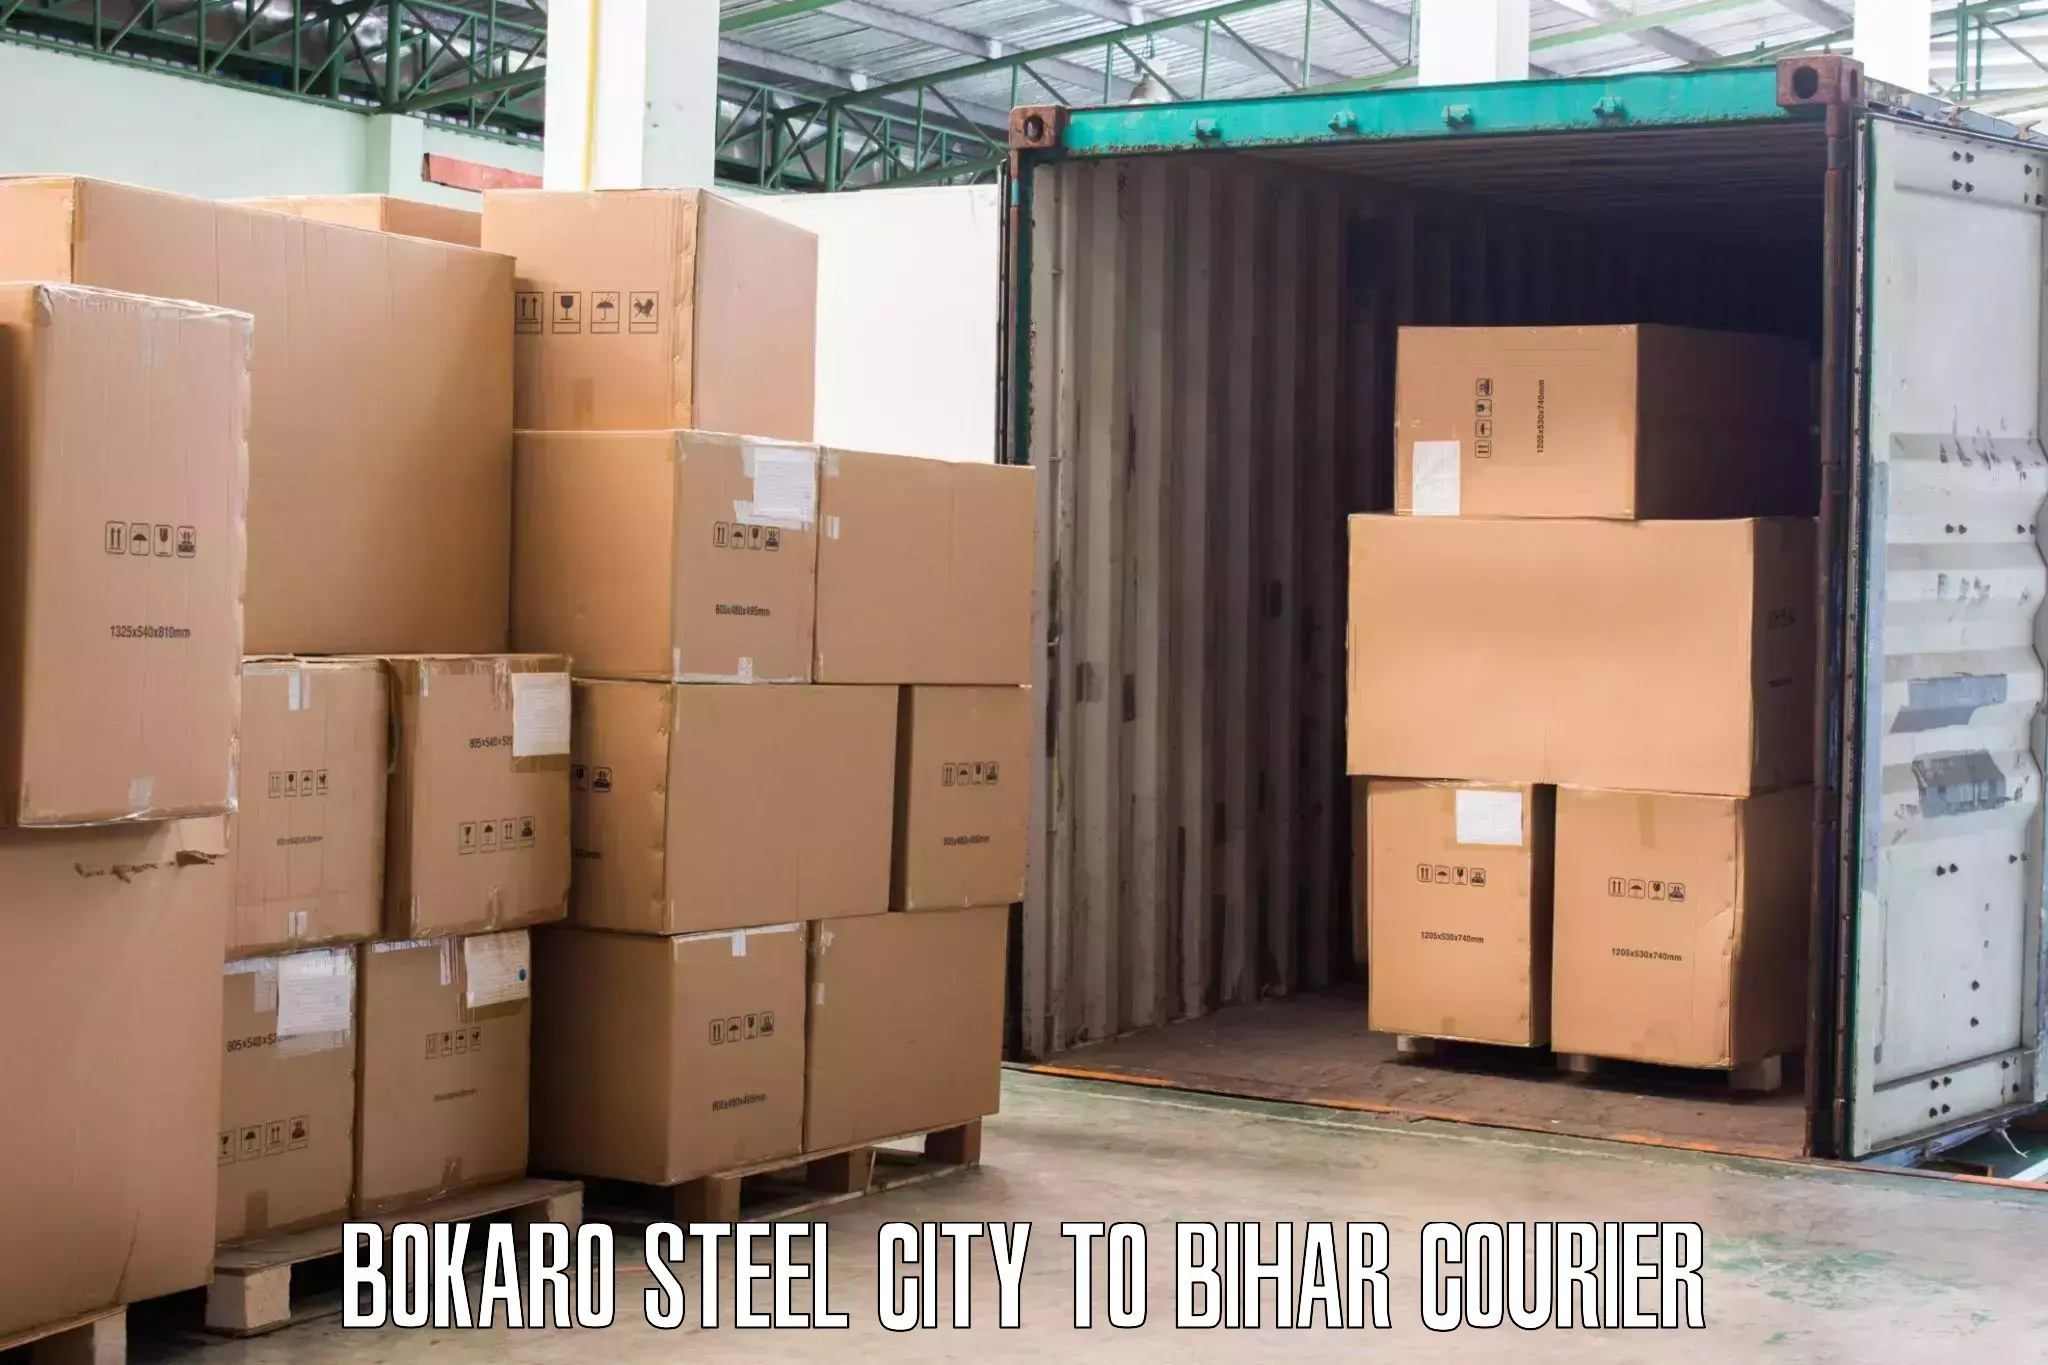 Door-to-door relocation services in Bokaro Steel City to Tribeniganj